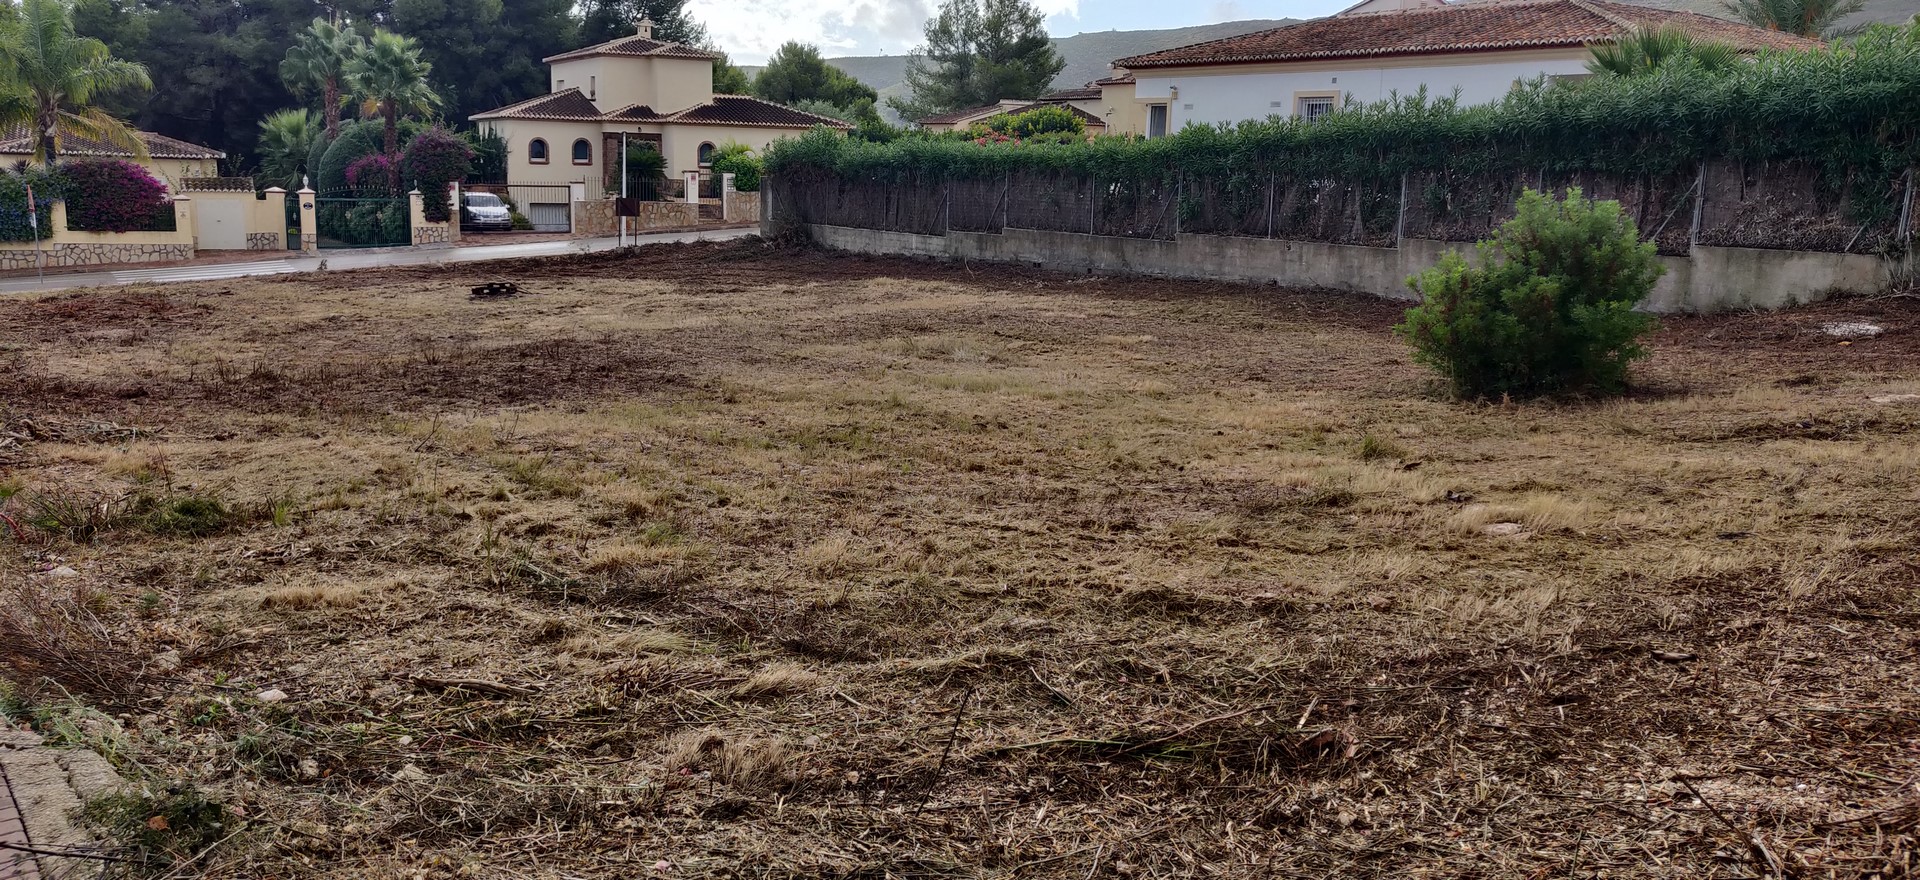 Terrain à vendre prêt à construire avec licence et projet approuvé à Las Laderas - Javea